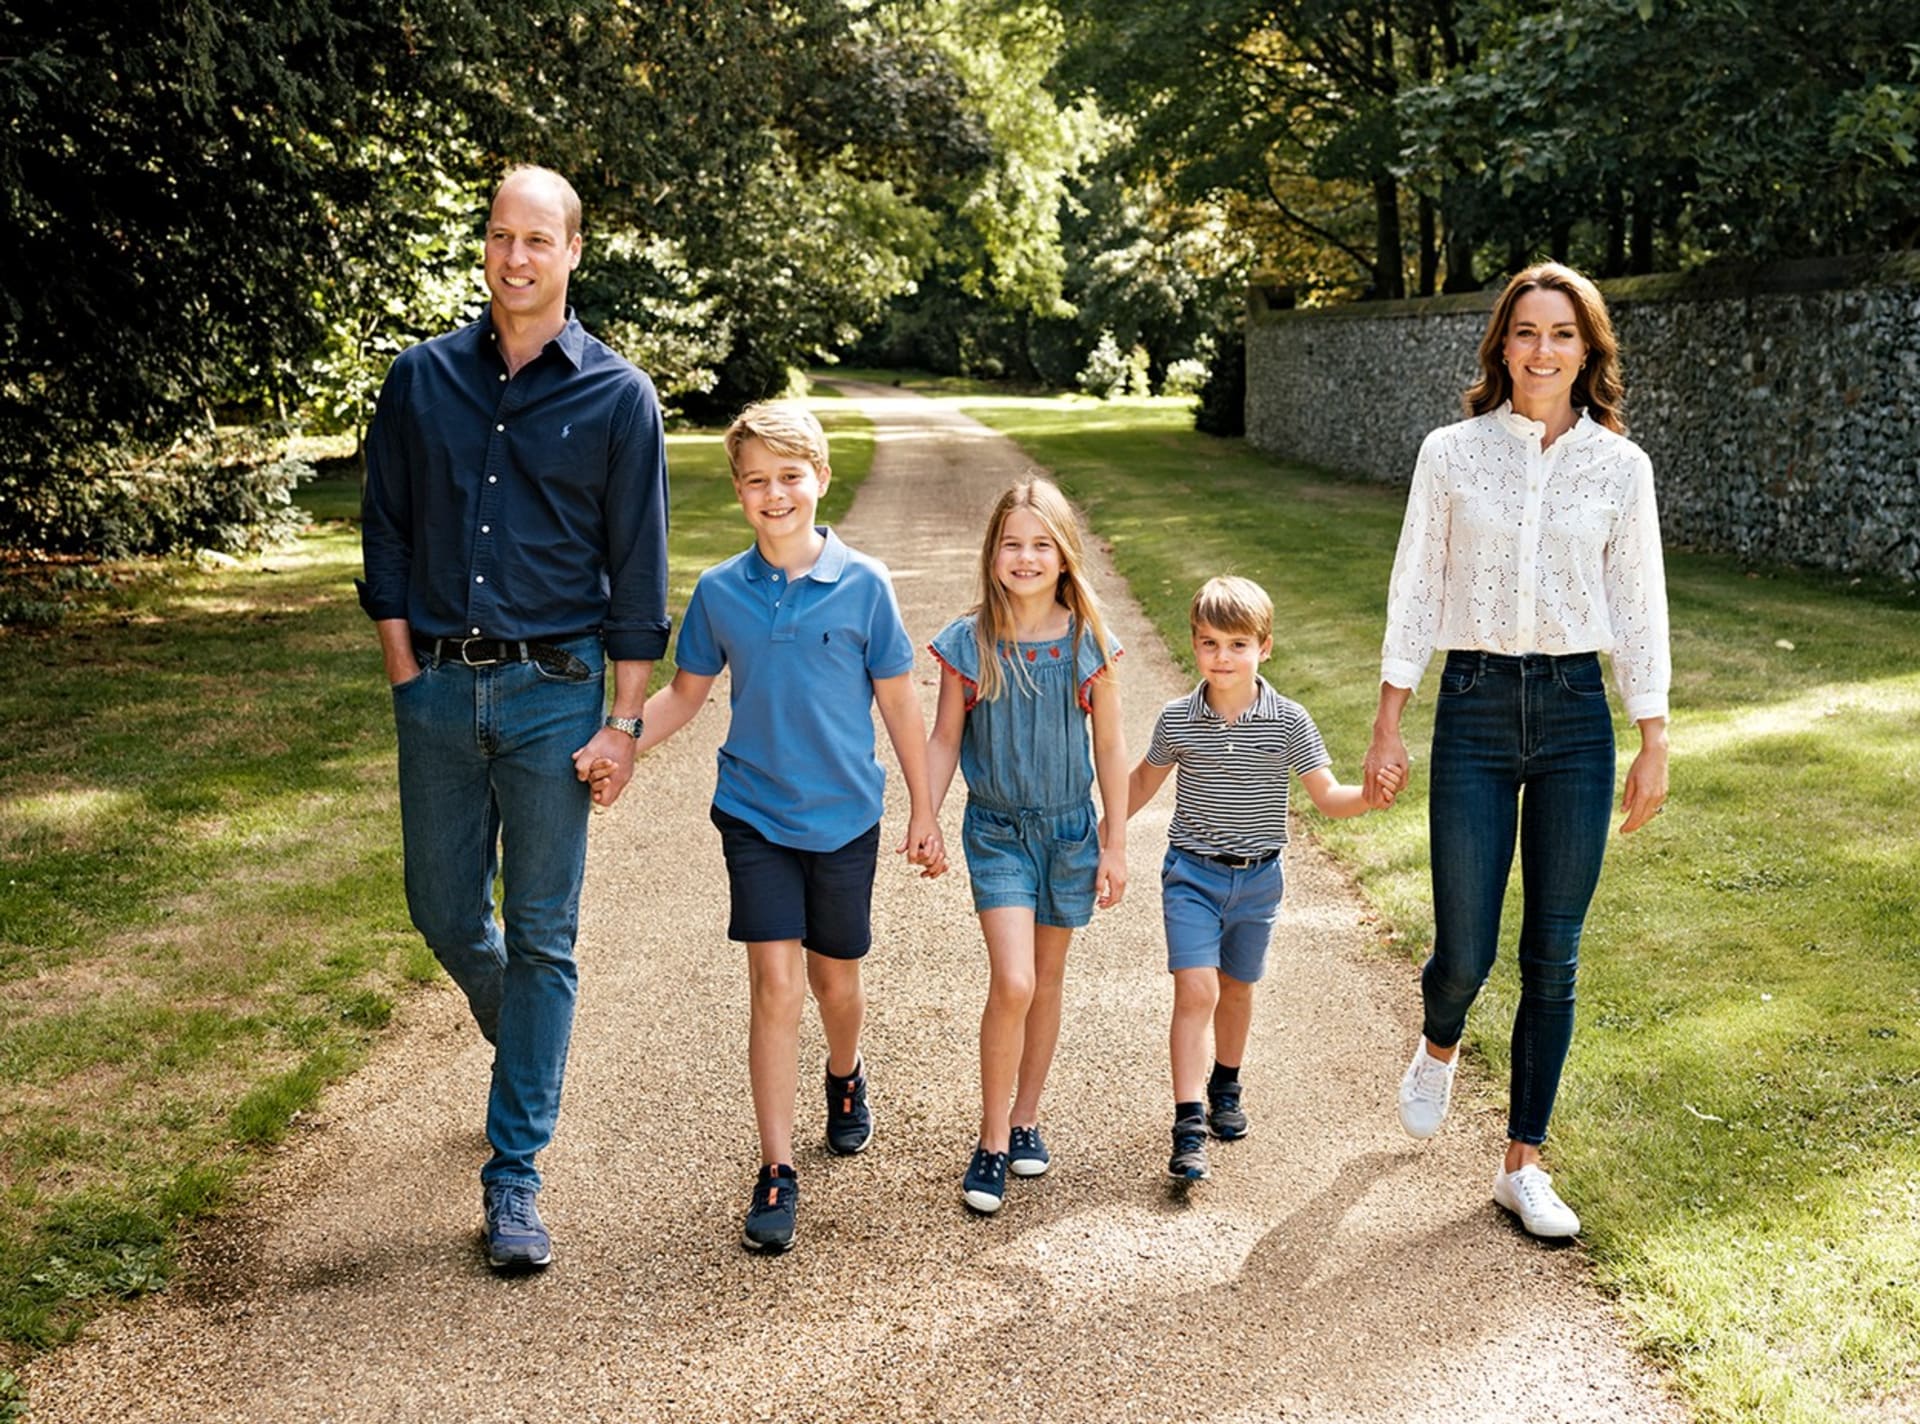 Vánoční přání pincezny a prince z Walesu s dětmi je v ležérním stylu.